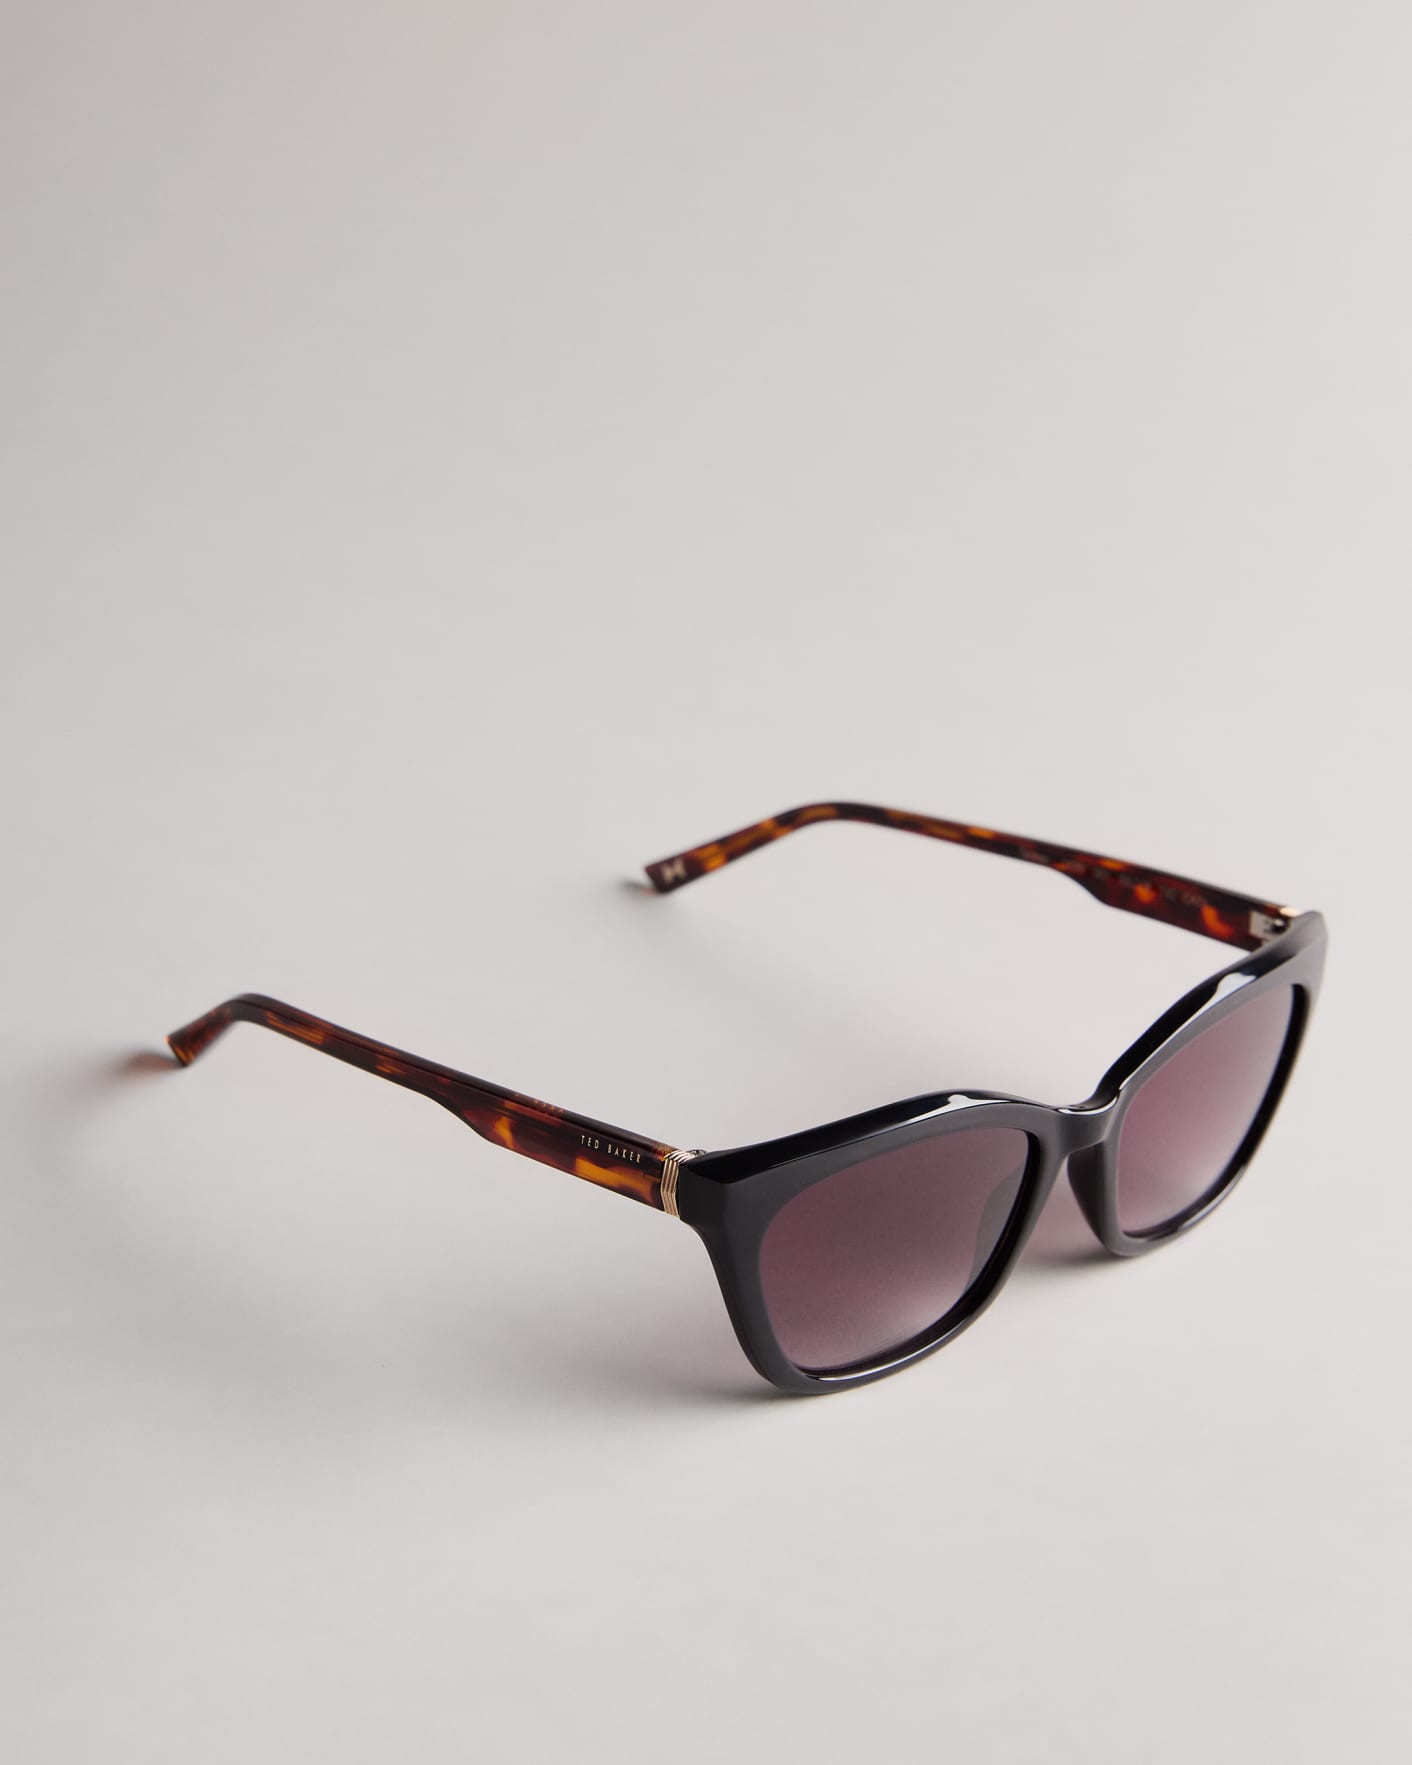 Black Cat Eye Frame Sunglasses Ted Baker